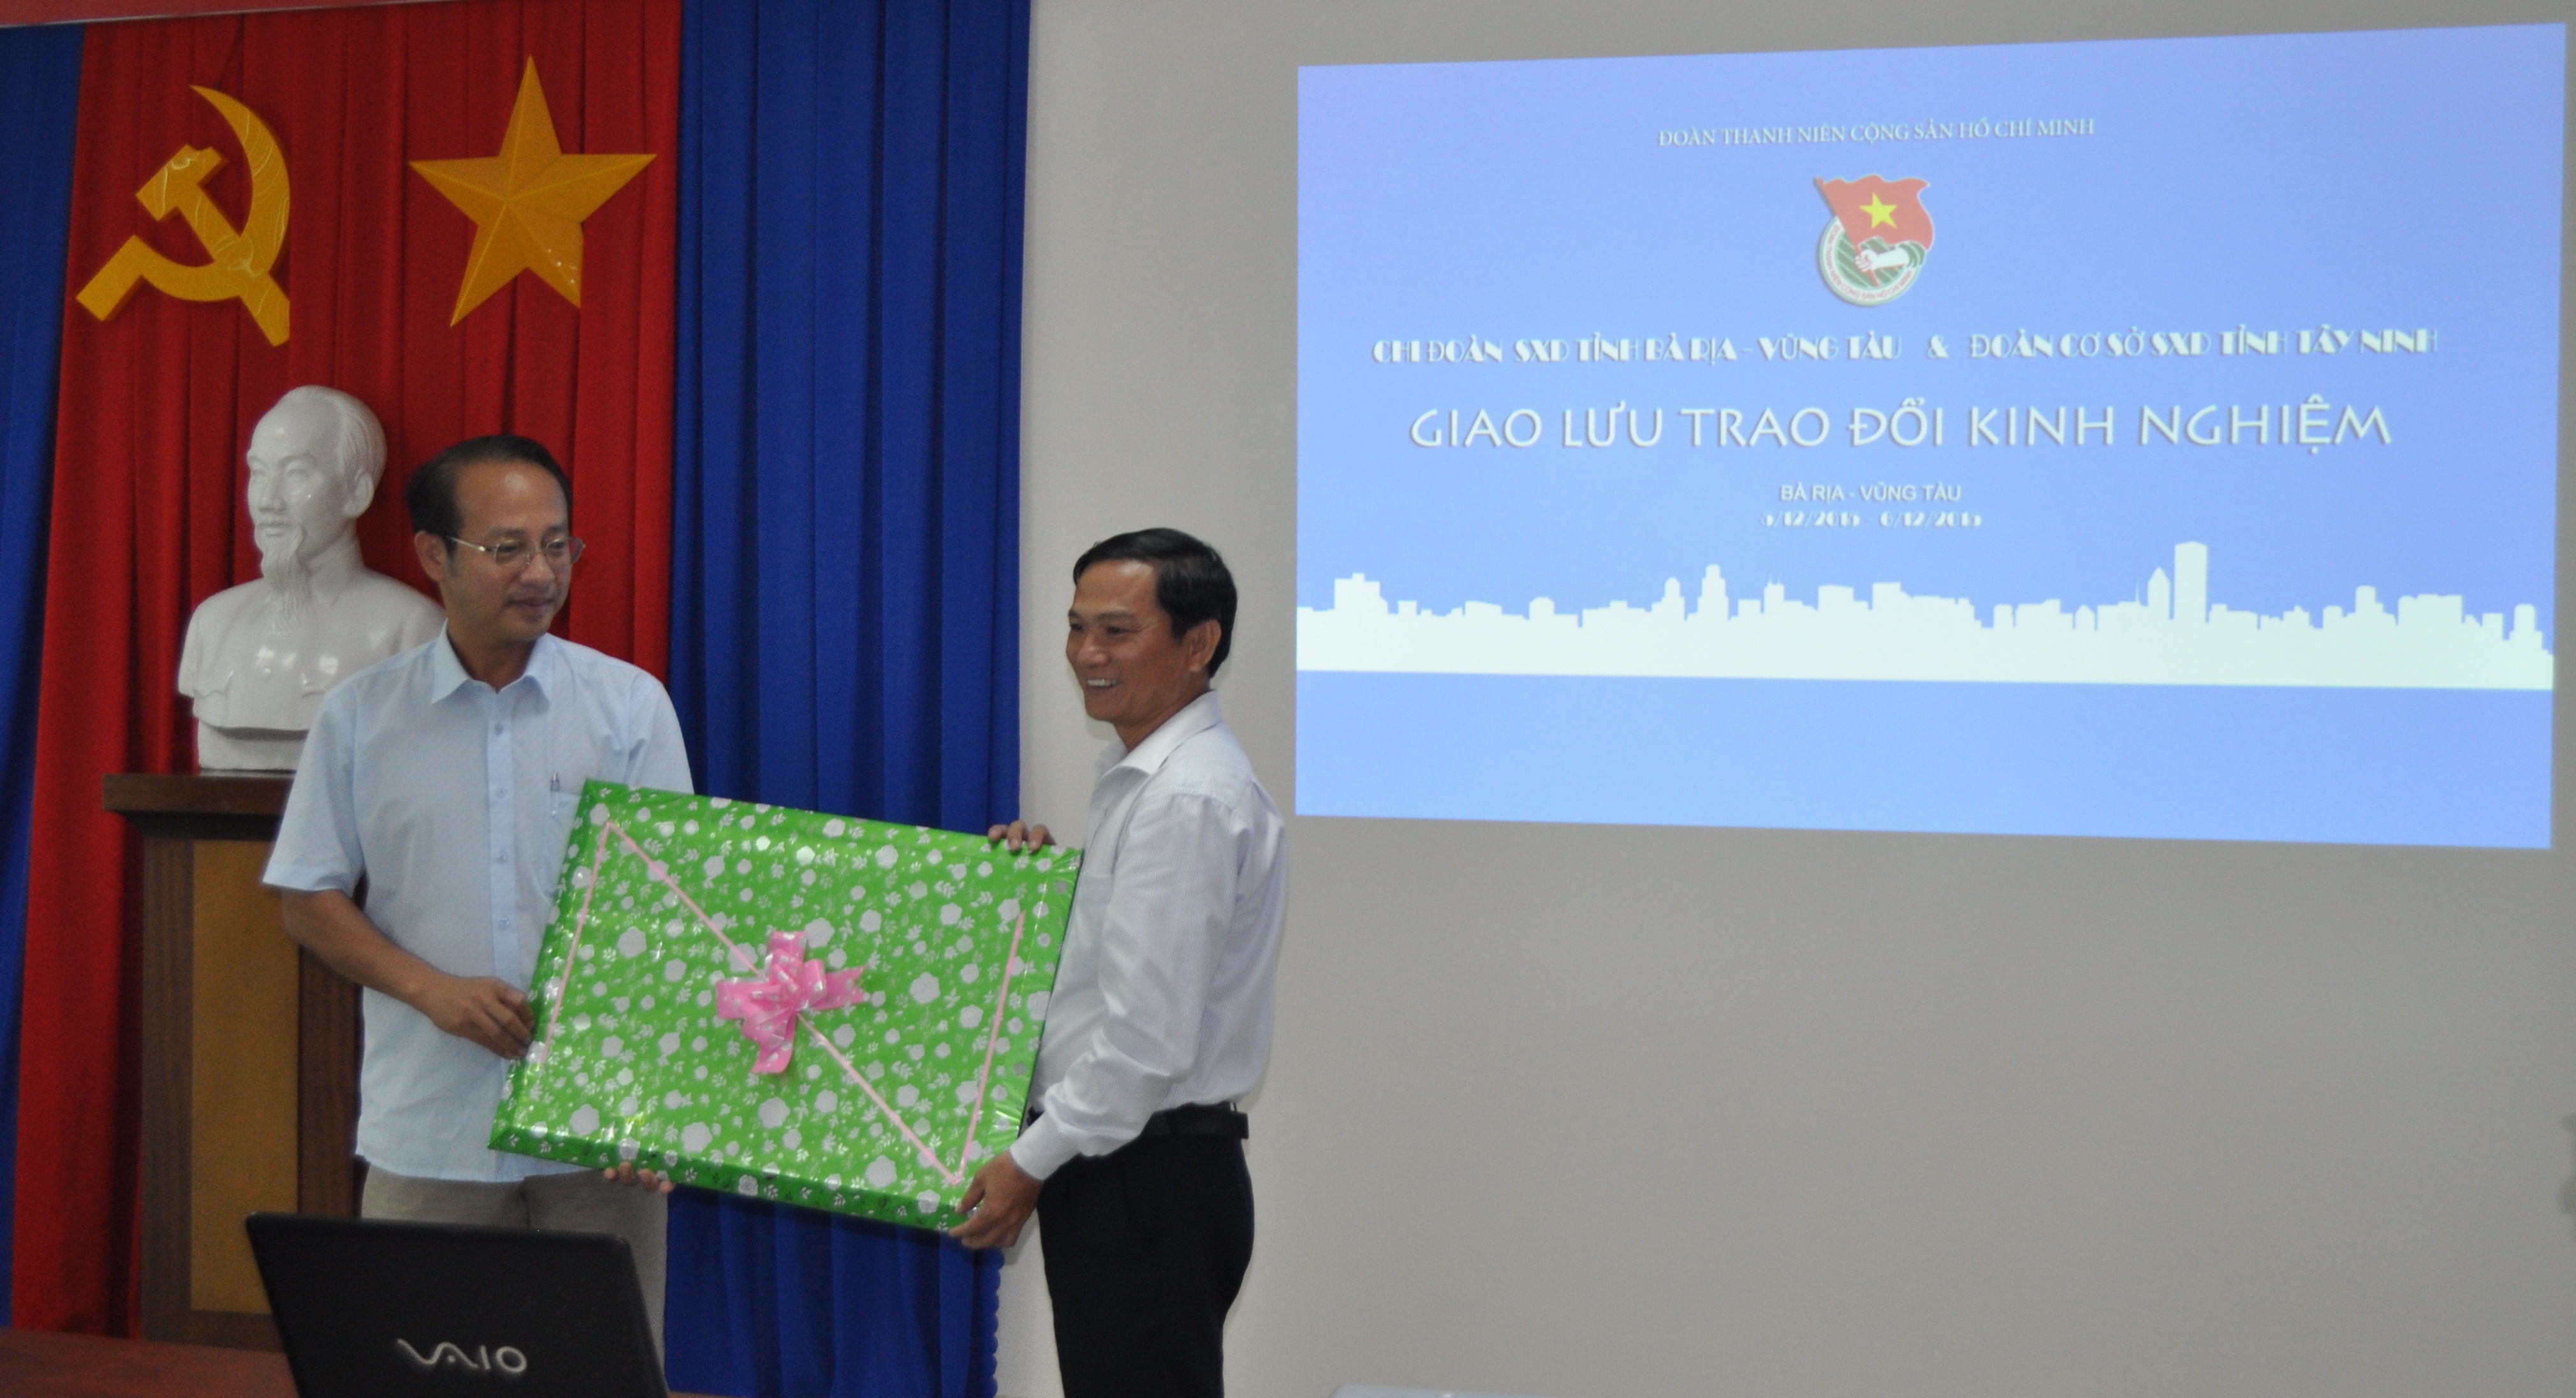 GIám đốc Trương Văn Ngôn tặng quà lưu niệm cho đại diện Sở Xây dựng Vũng Tàu